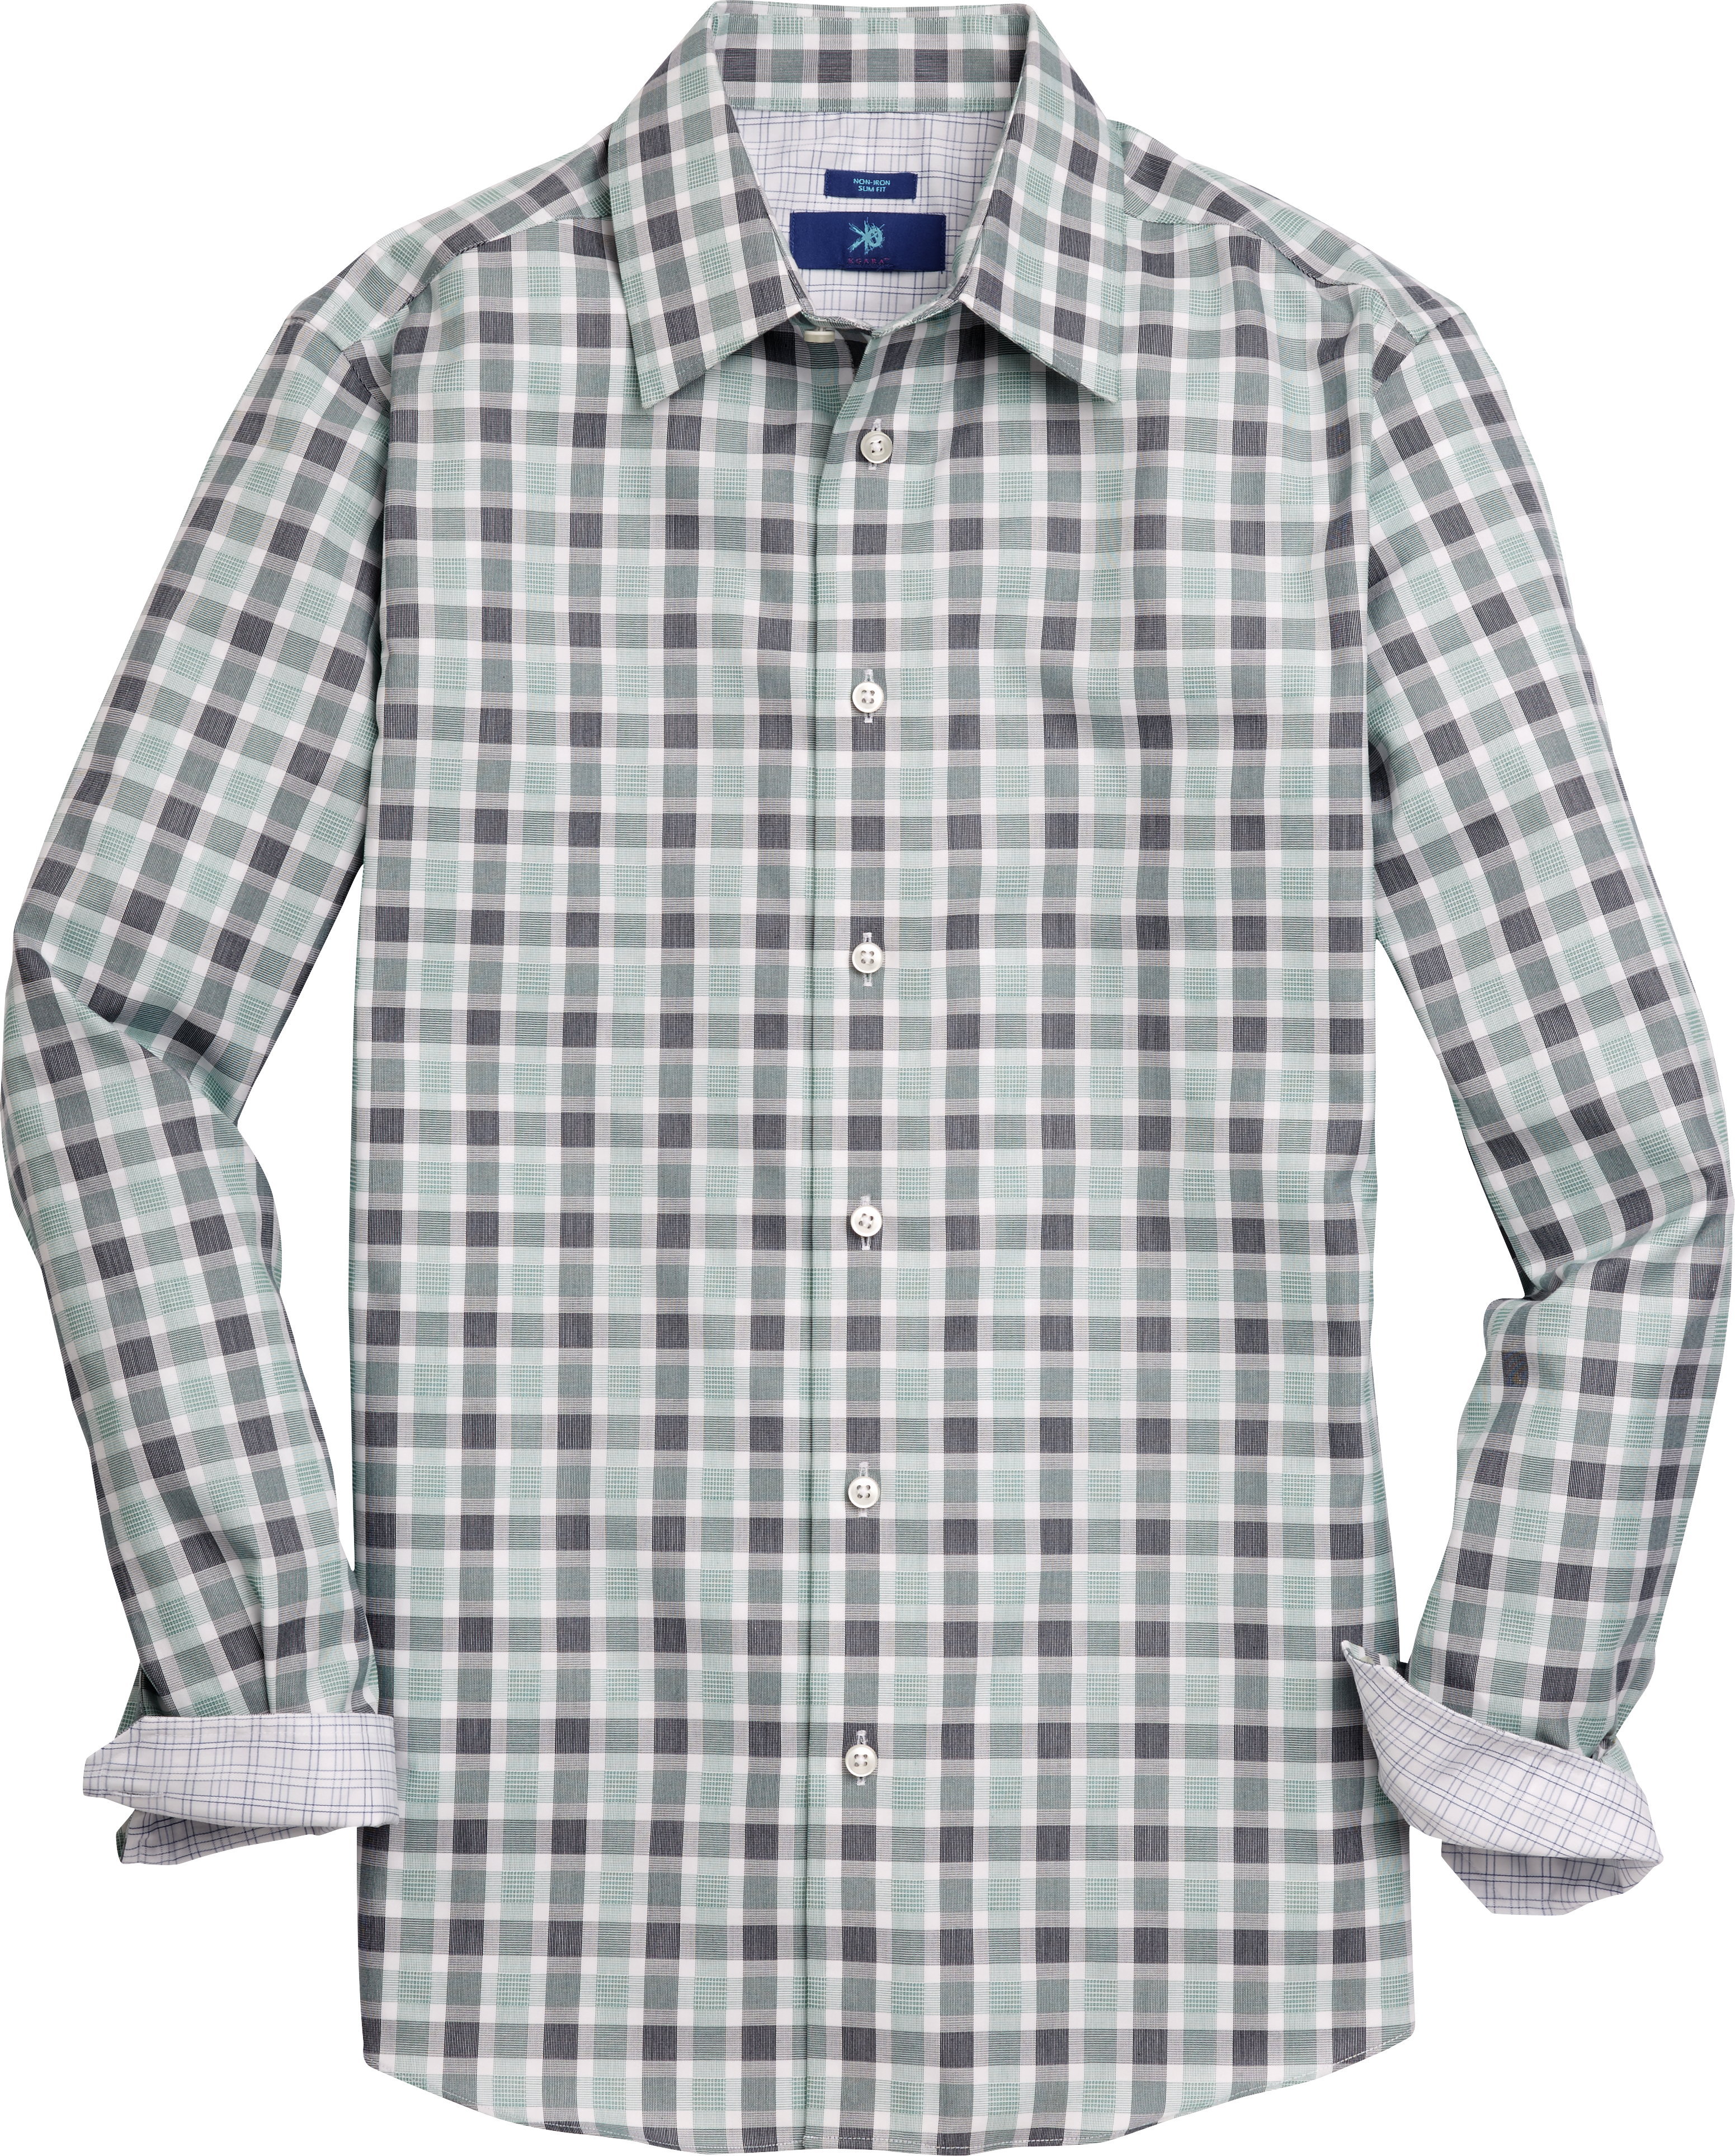 Men's Shirts - Polo Shirts, T Shirts, Casual Shirts | Men's Wearhouse